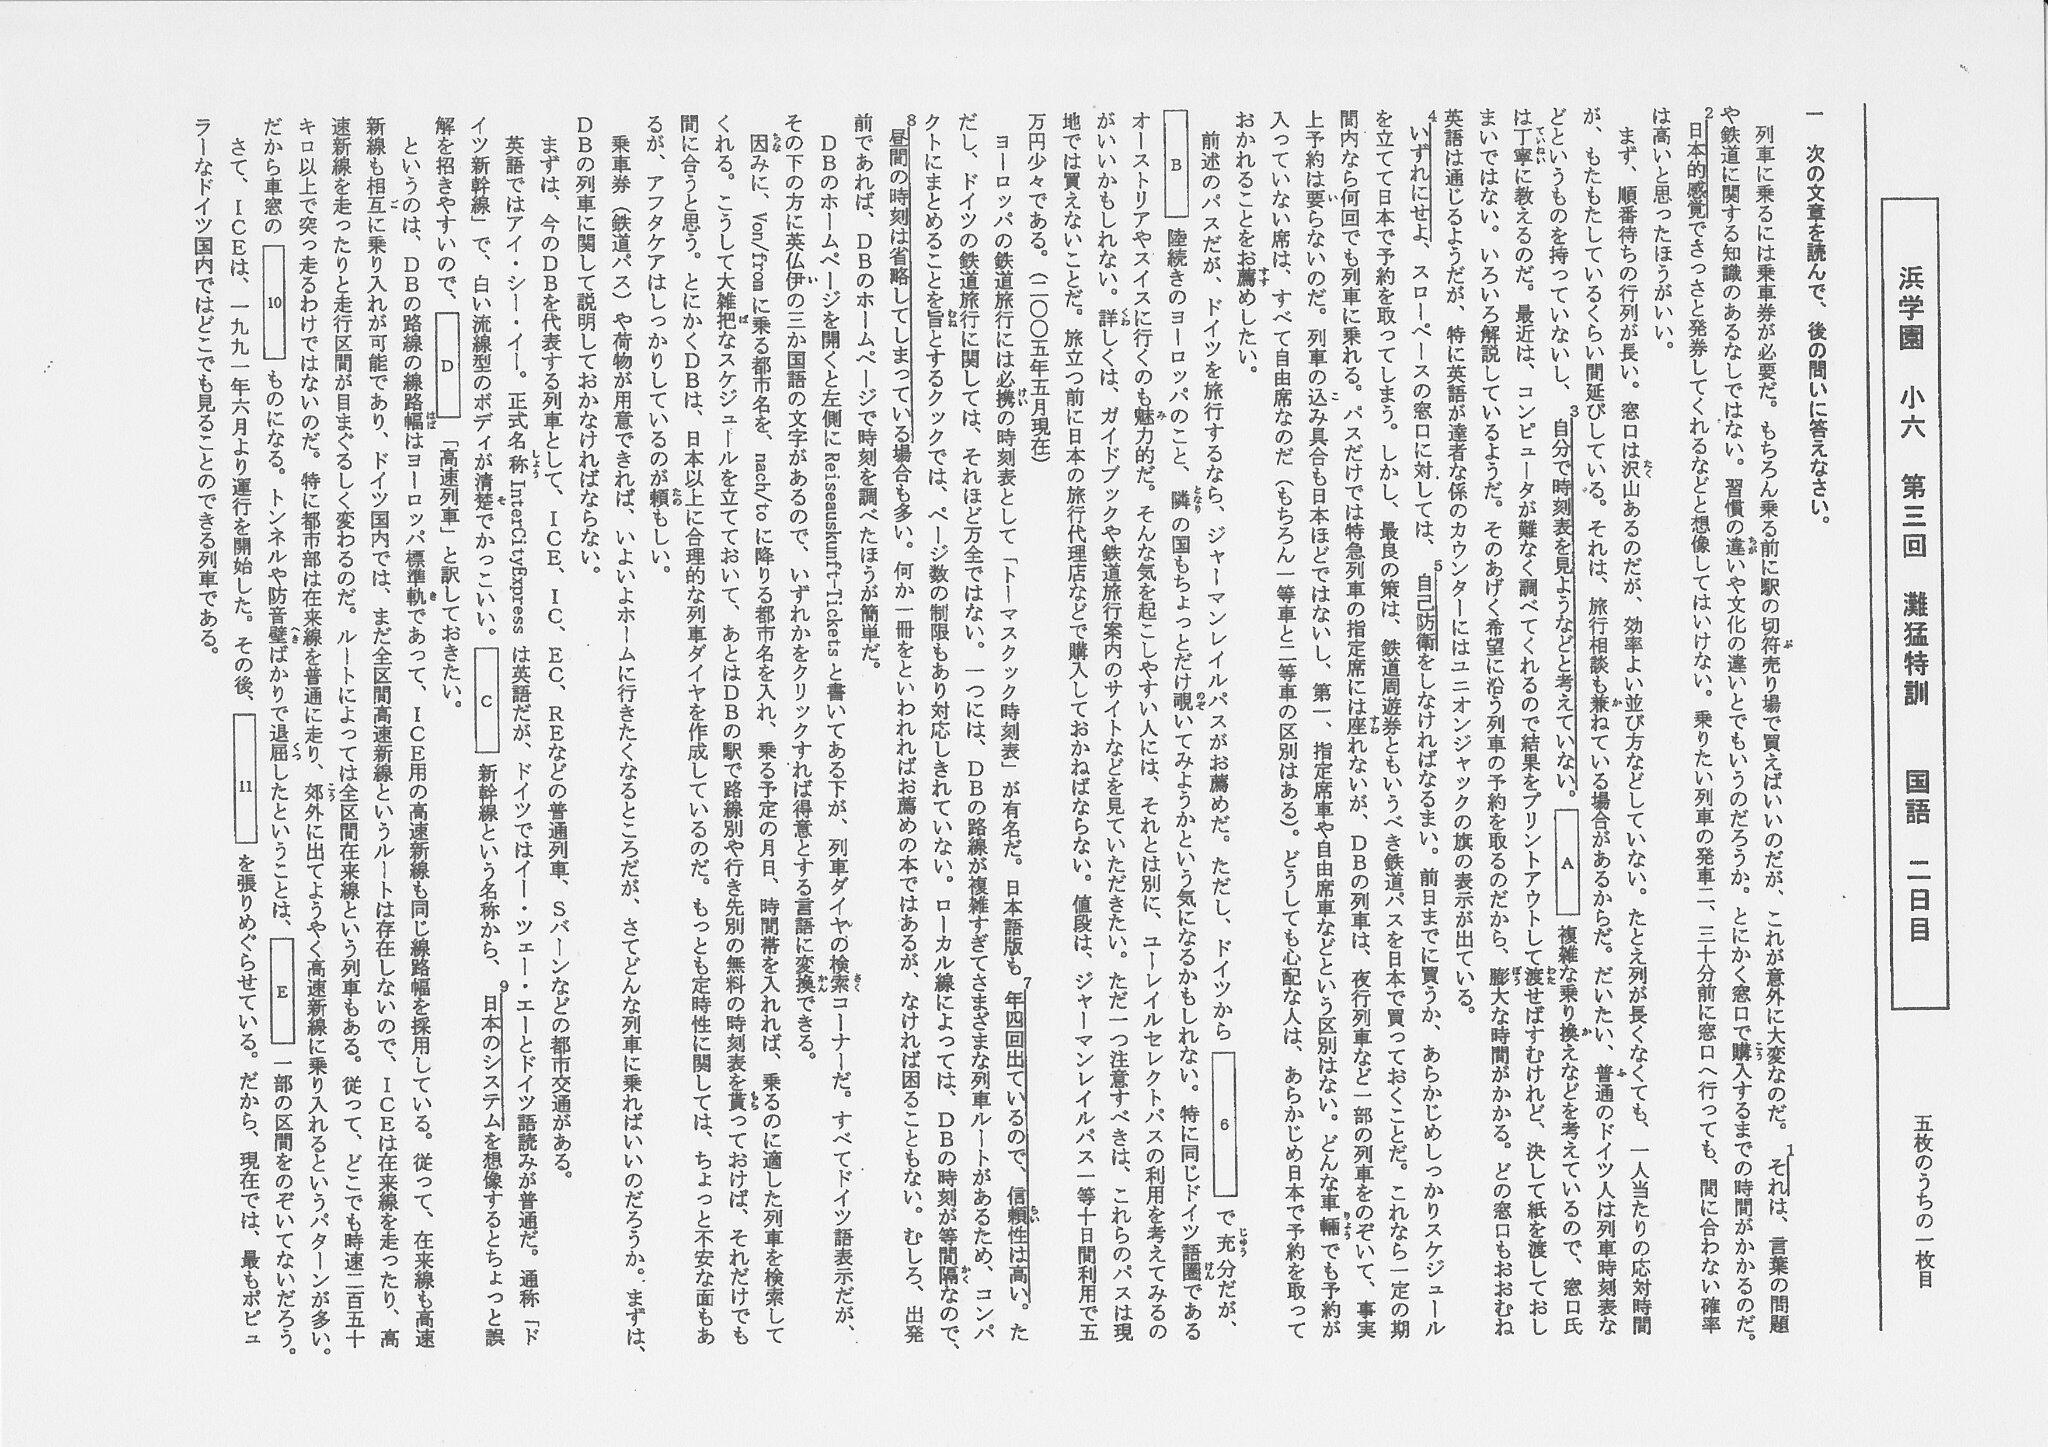 野田 隆 小生の執筆した鉄道書が中学受験の問題集に使われるとは 国語の長文読解問題でした Http T Co Vurdb7slk3 Twitter